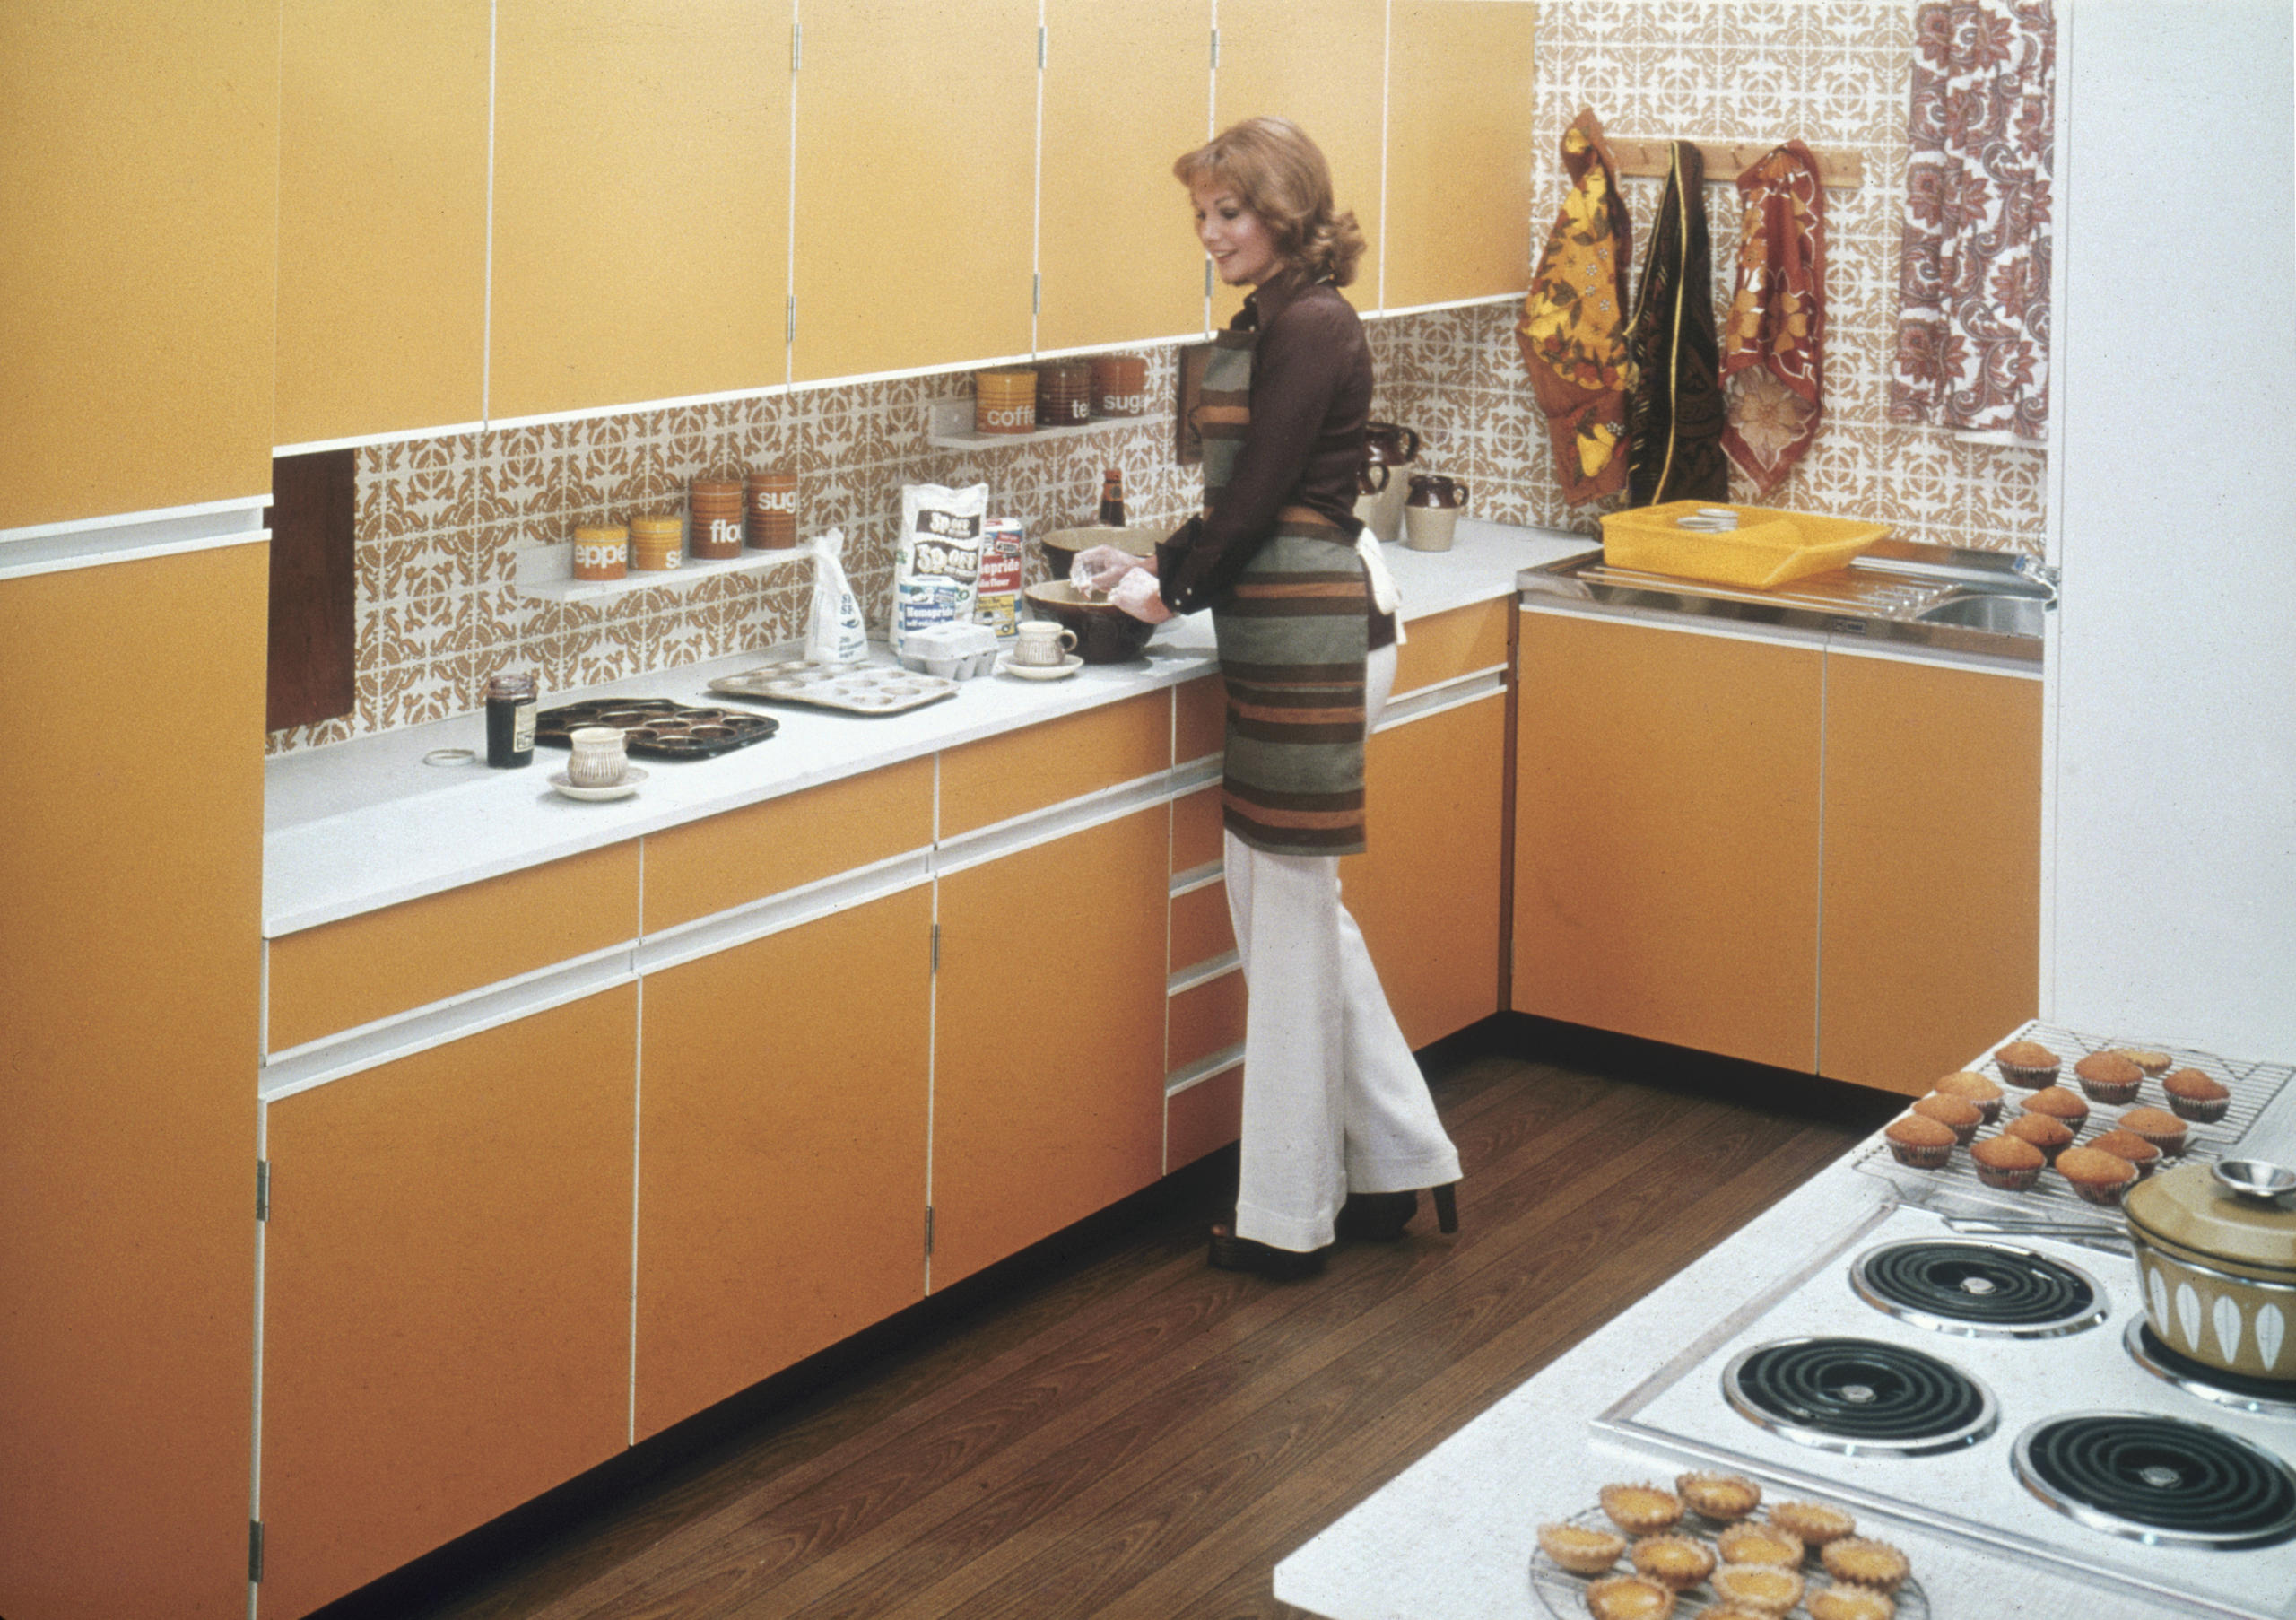 Cocina de color al estilo de los años 70